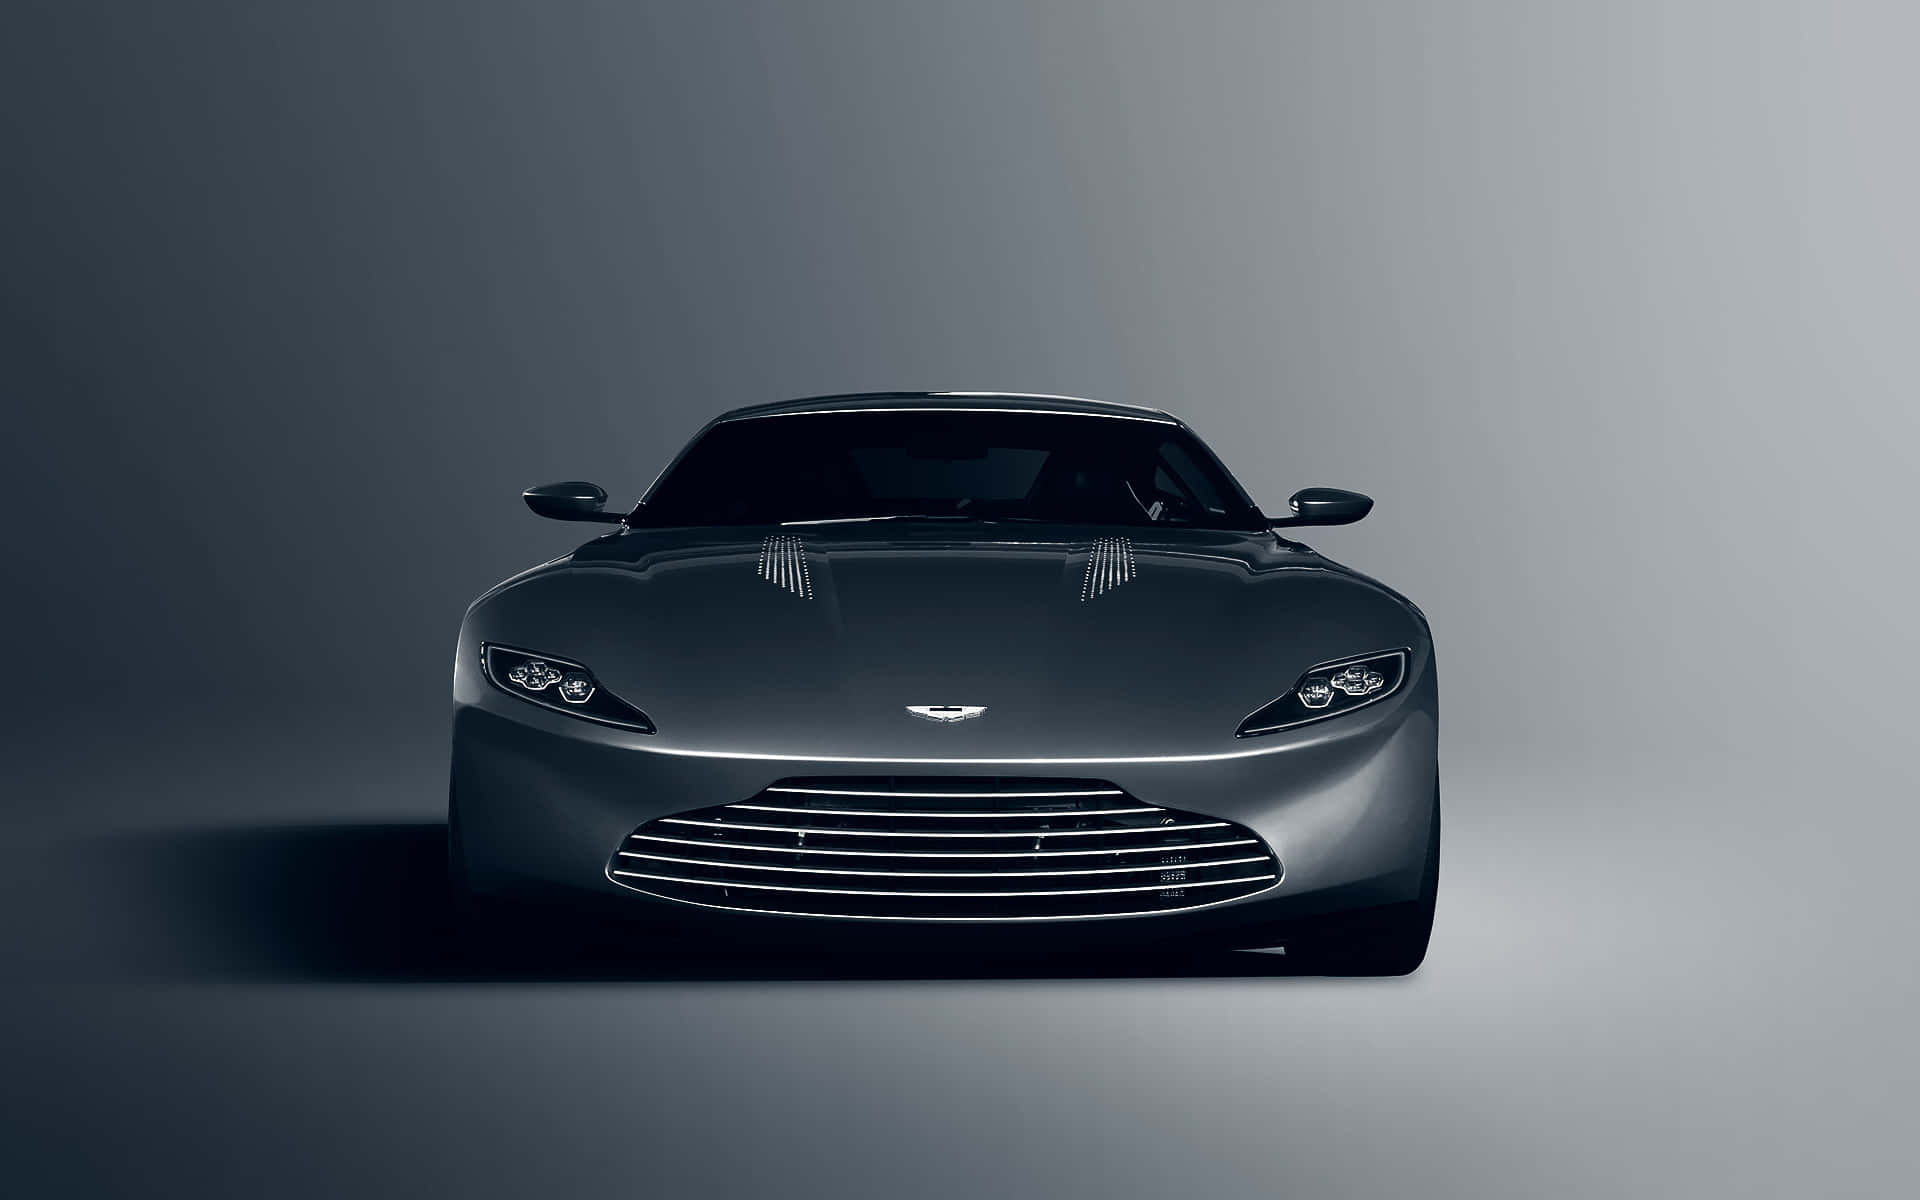 Luxurious Aston Martin Concept Car